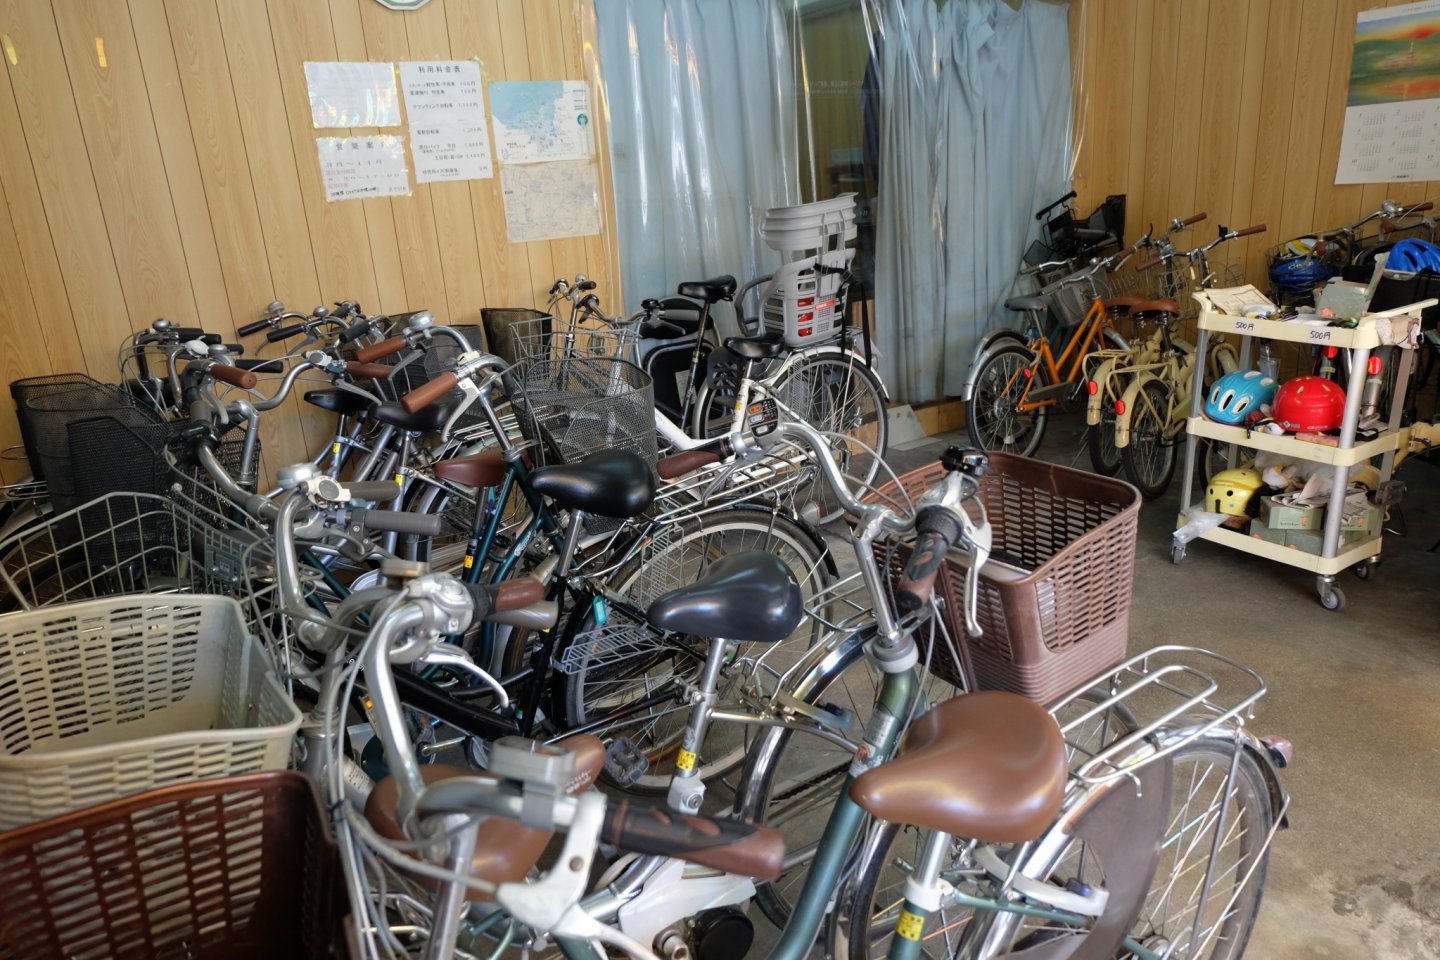 ทางร้านจักรยานให้เลือกหลายแบบ ราคาขึ้นอยู่กับประเภทของจักรยาน สนนราคาถูกมากๆ 